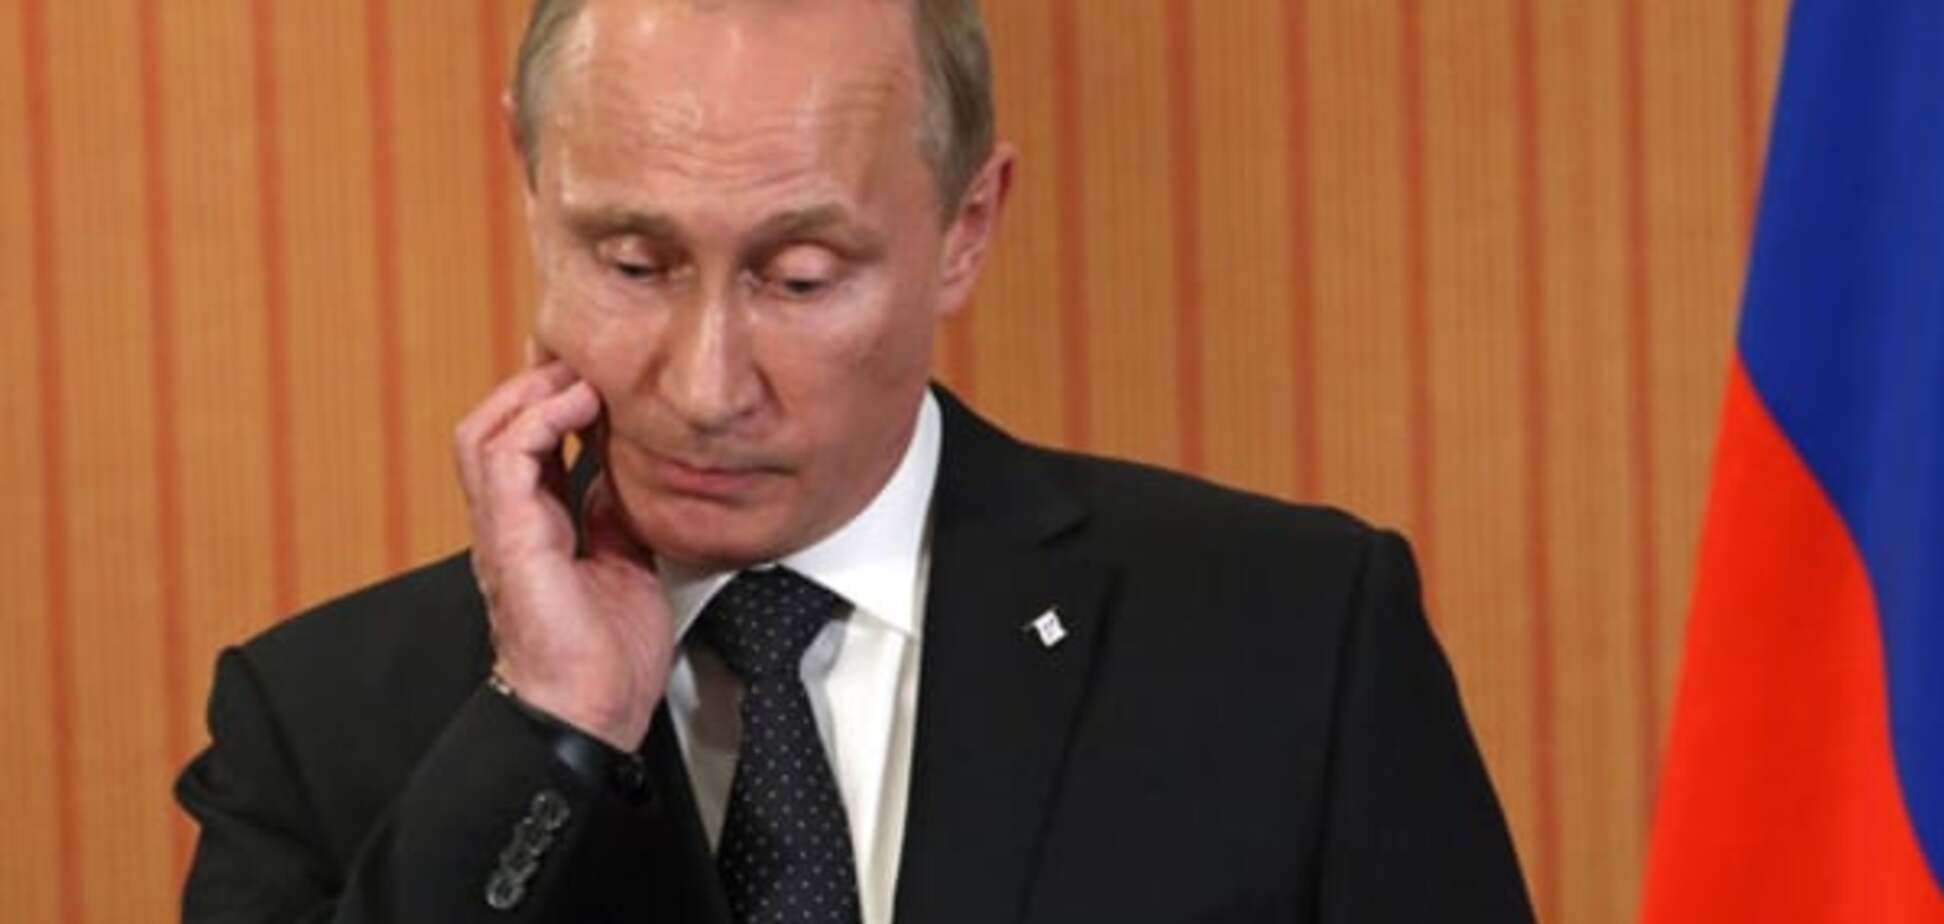 Народ начинает 'трезветь': Рабинович объяснил, зачем Путин замораживает войну на Донбассе